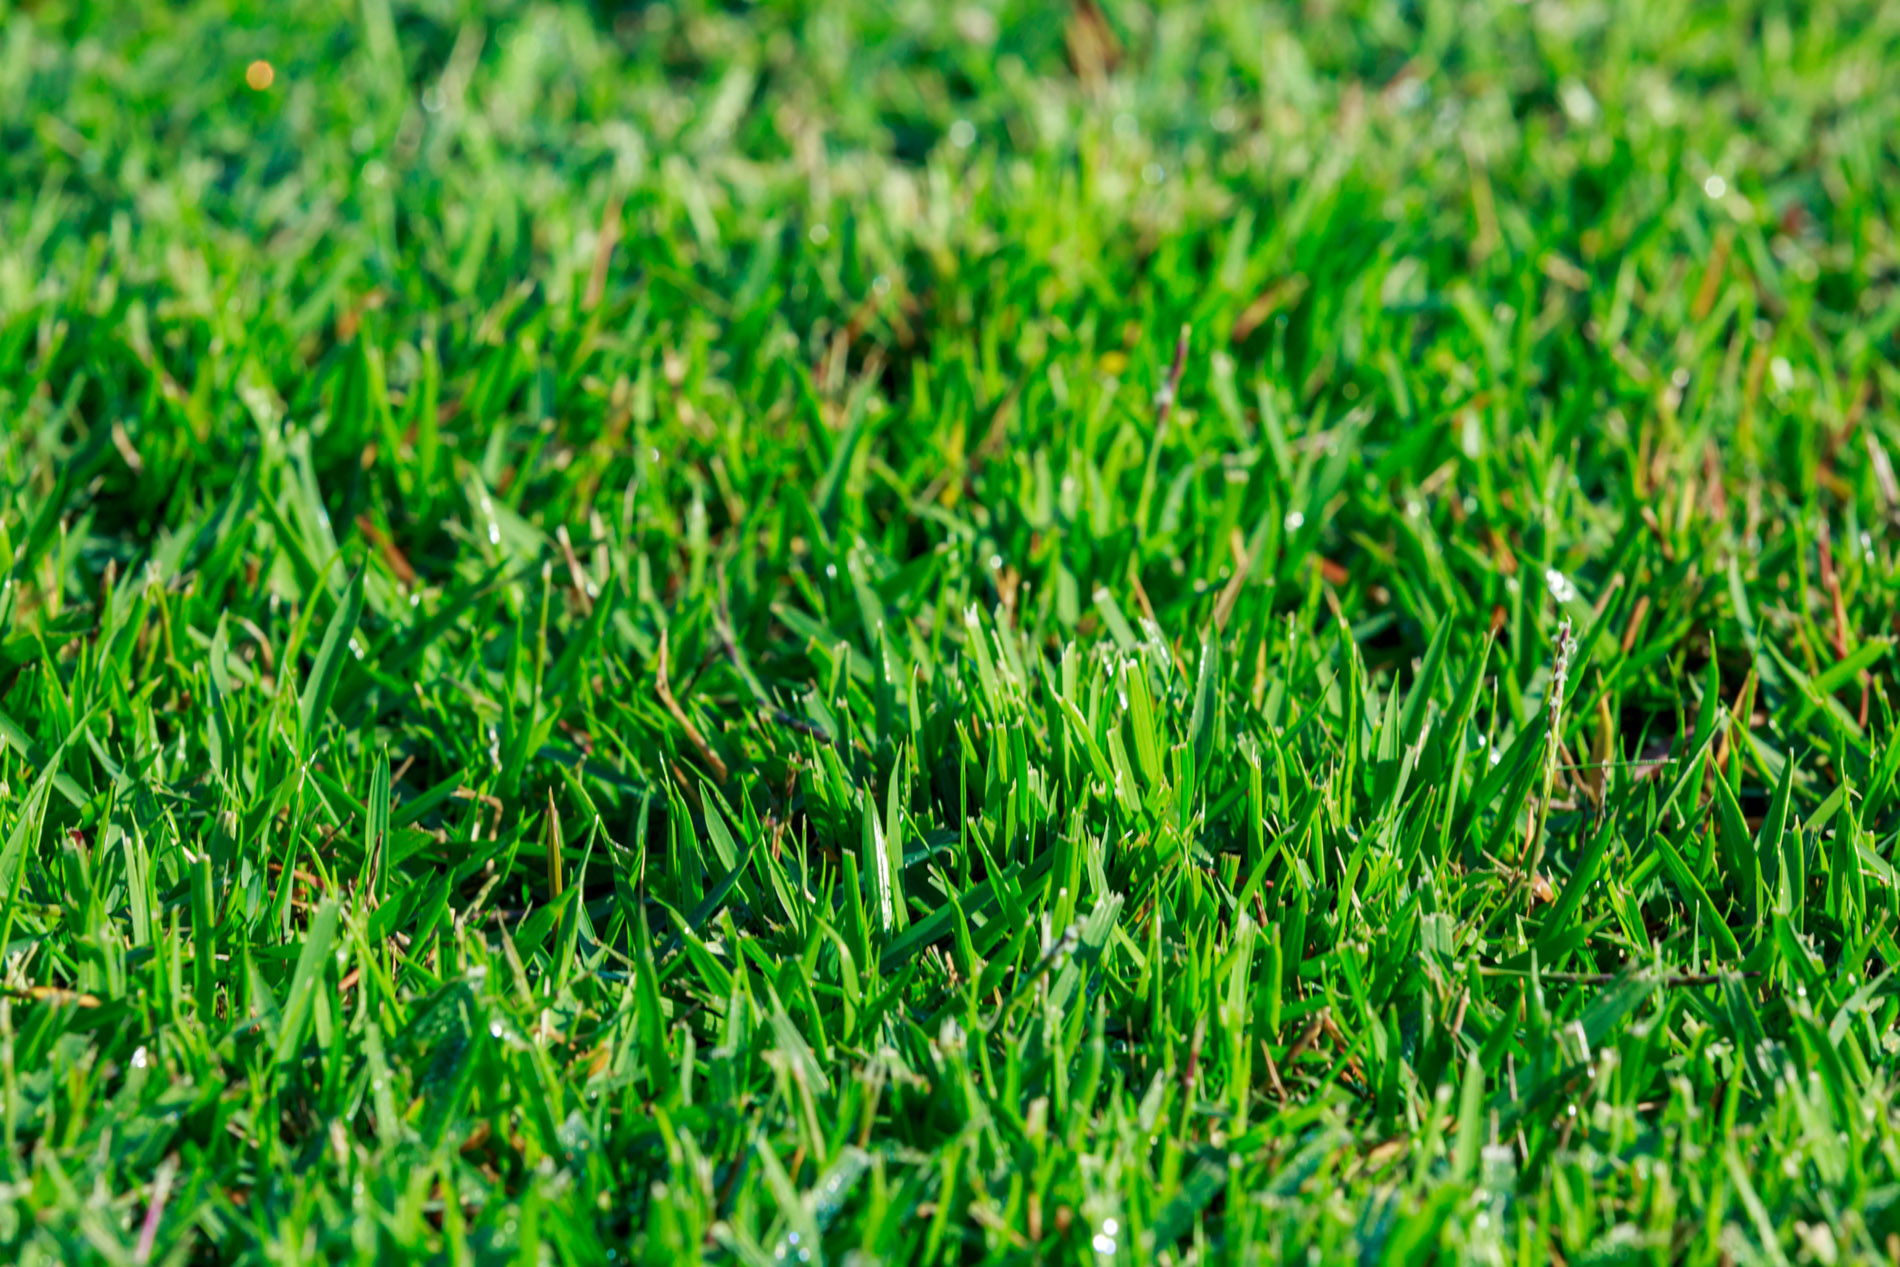 Close up of Empire Zoysia sod grass